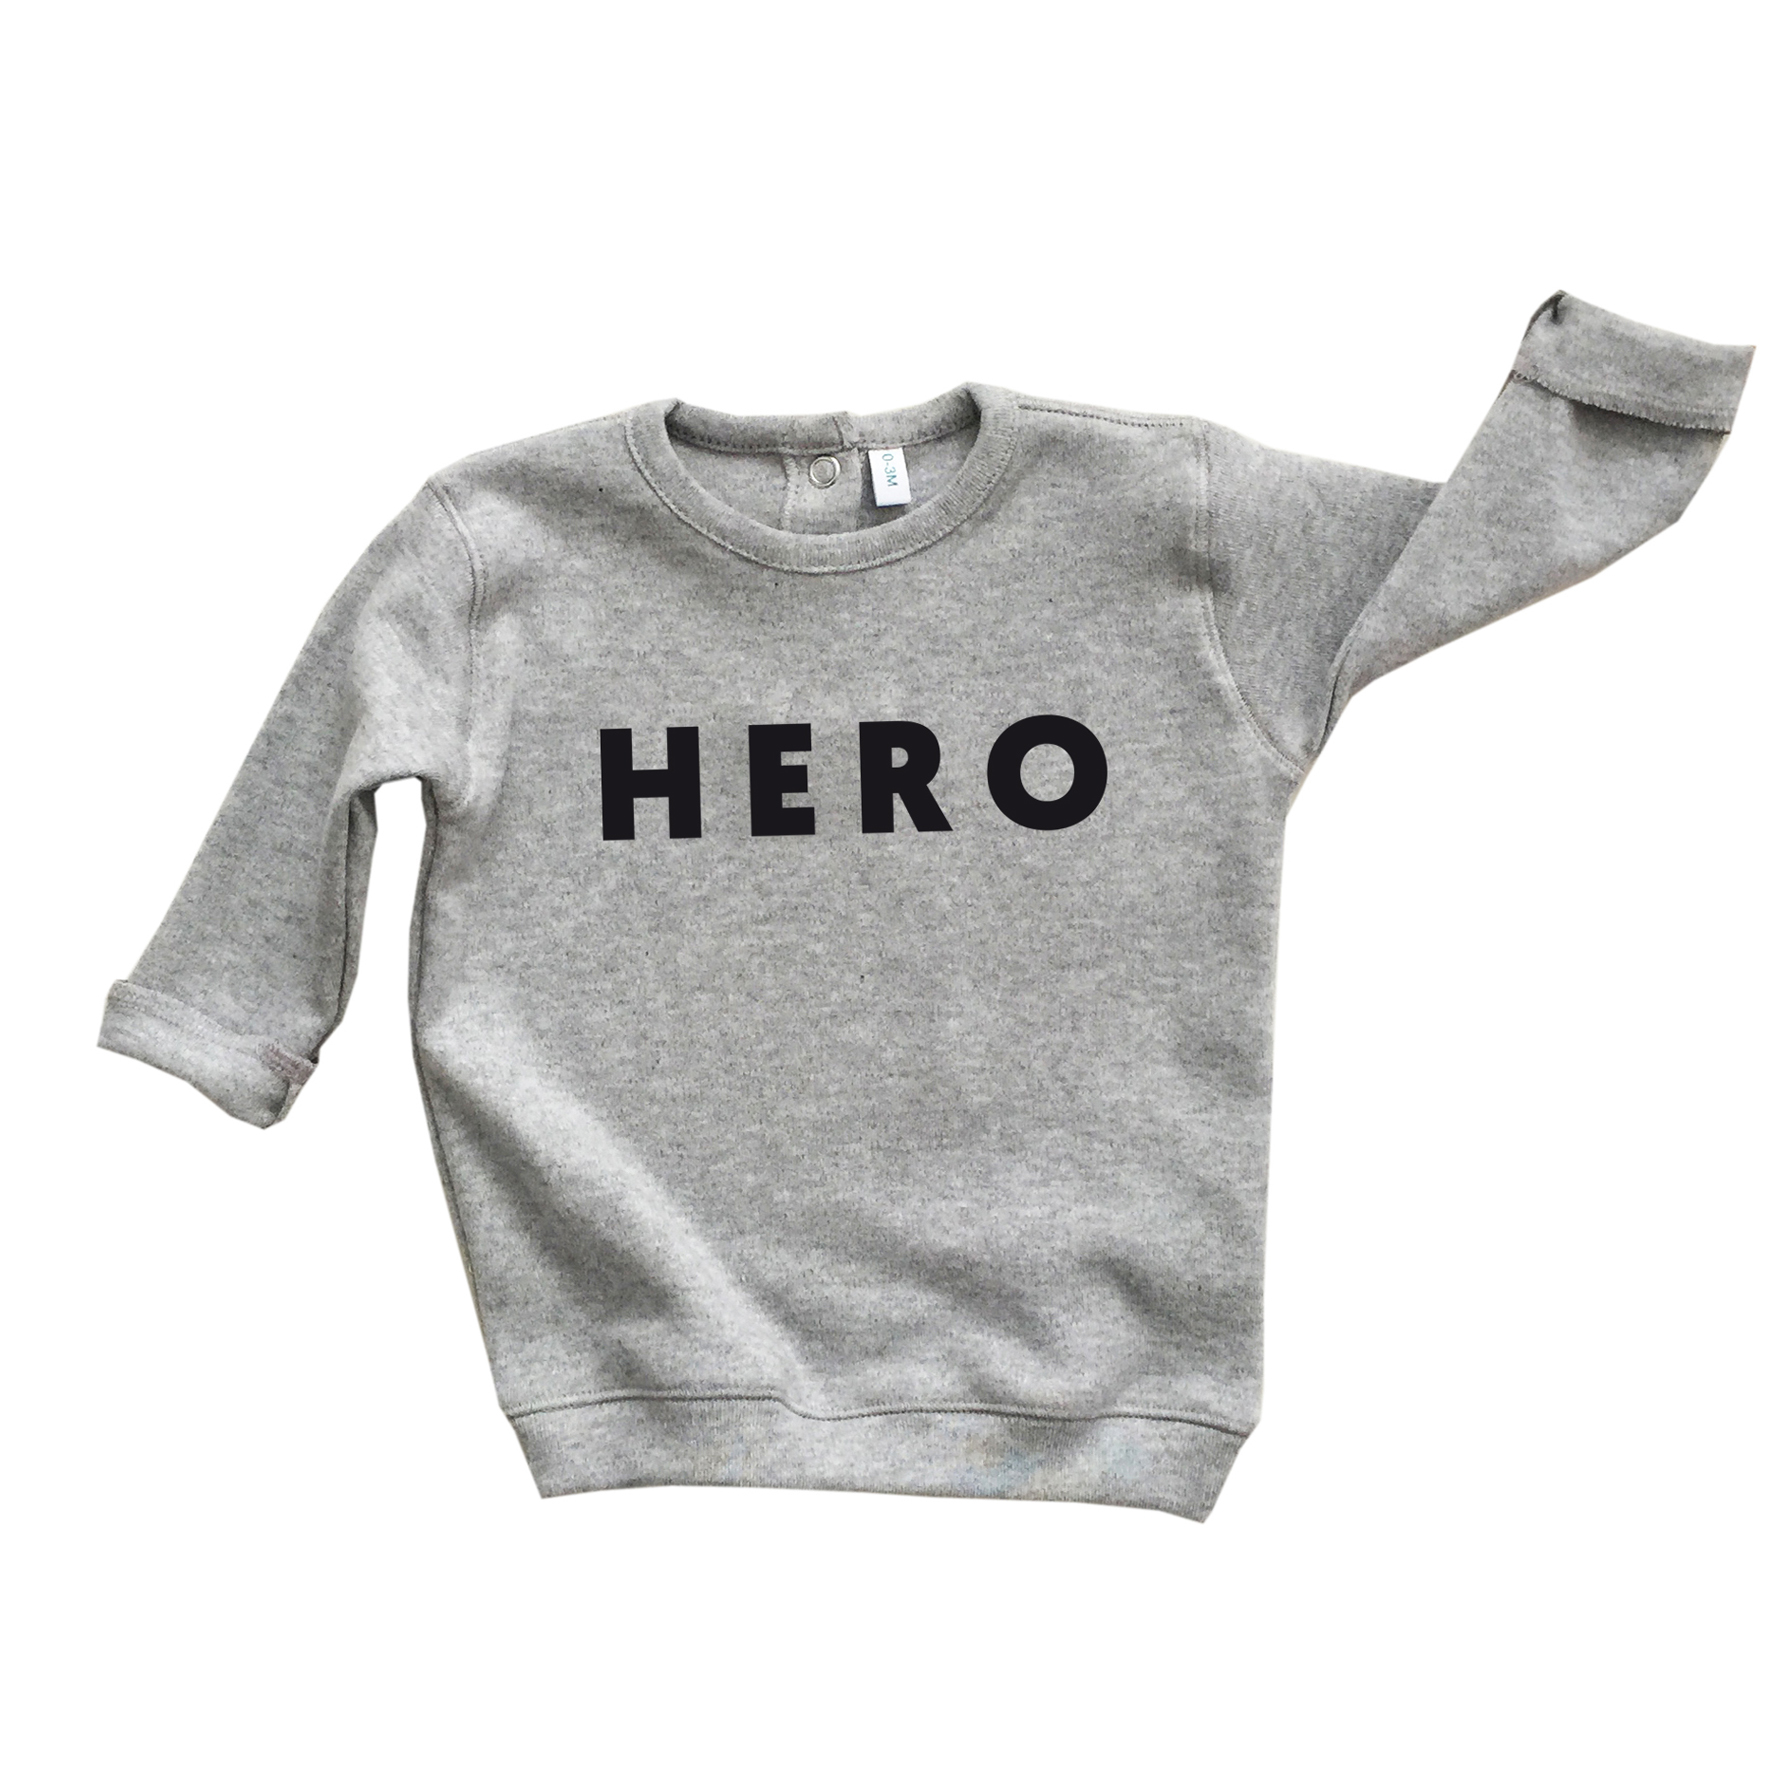 HERO sweatshirt grey